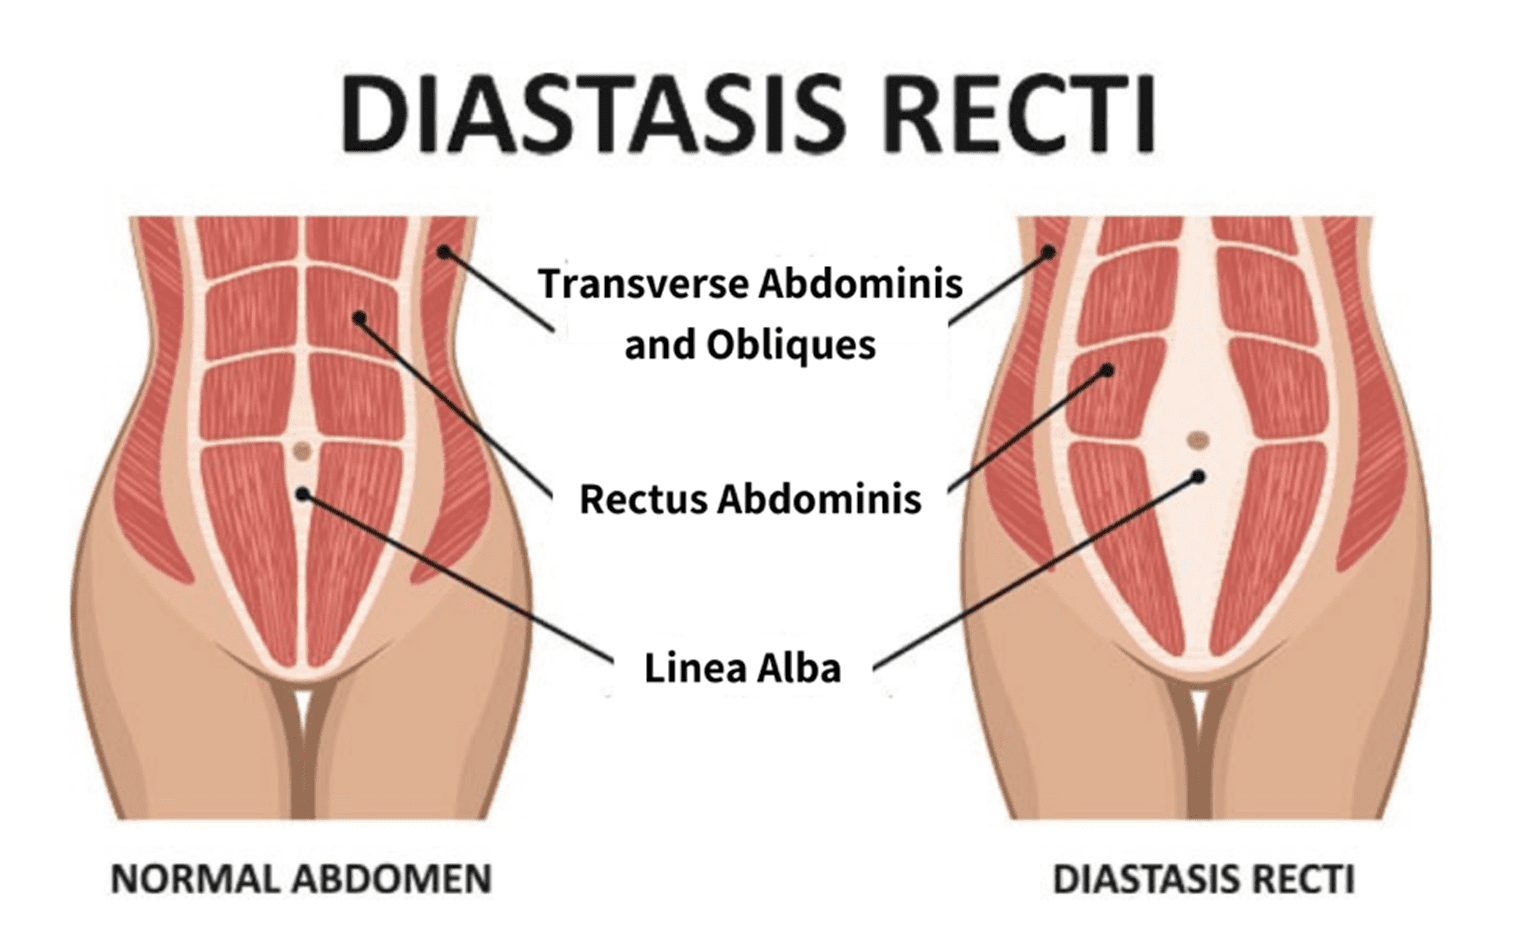 Diastasis recti exercises